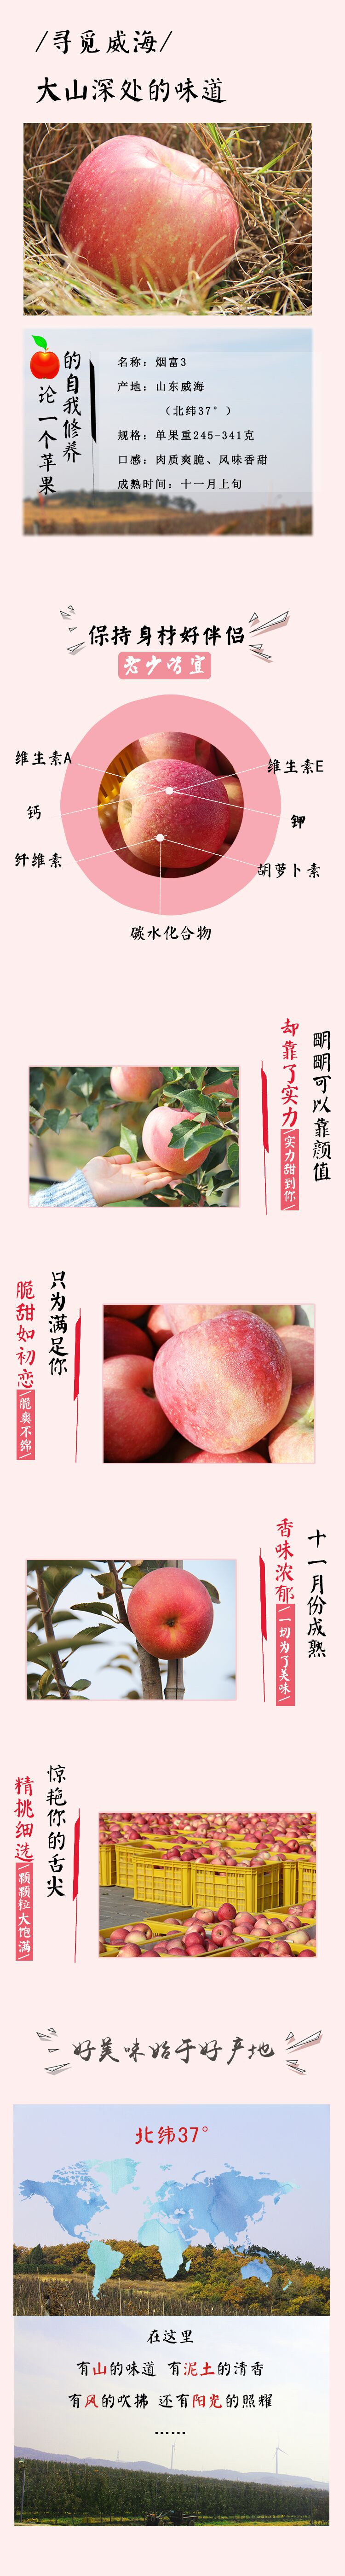 祝果烟台红富士3号苹果香甜大个糖心苹果